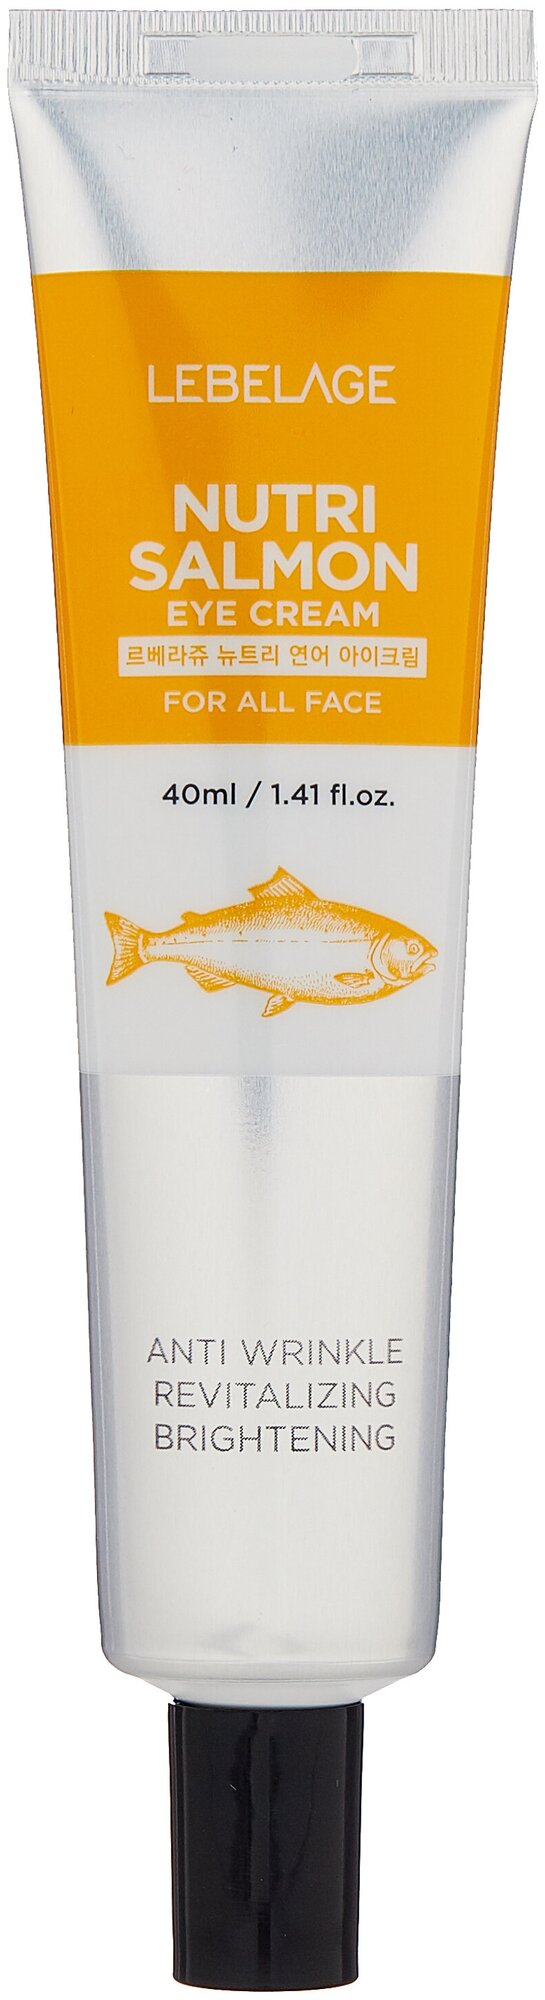 Крем для области вокруг глаз Lebelage Nutri Salmon с маслом лосося 40мл Mido Cosmetics - фото №1